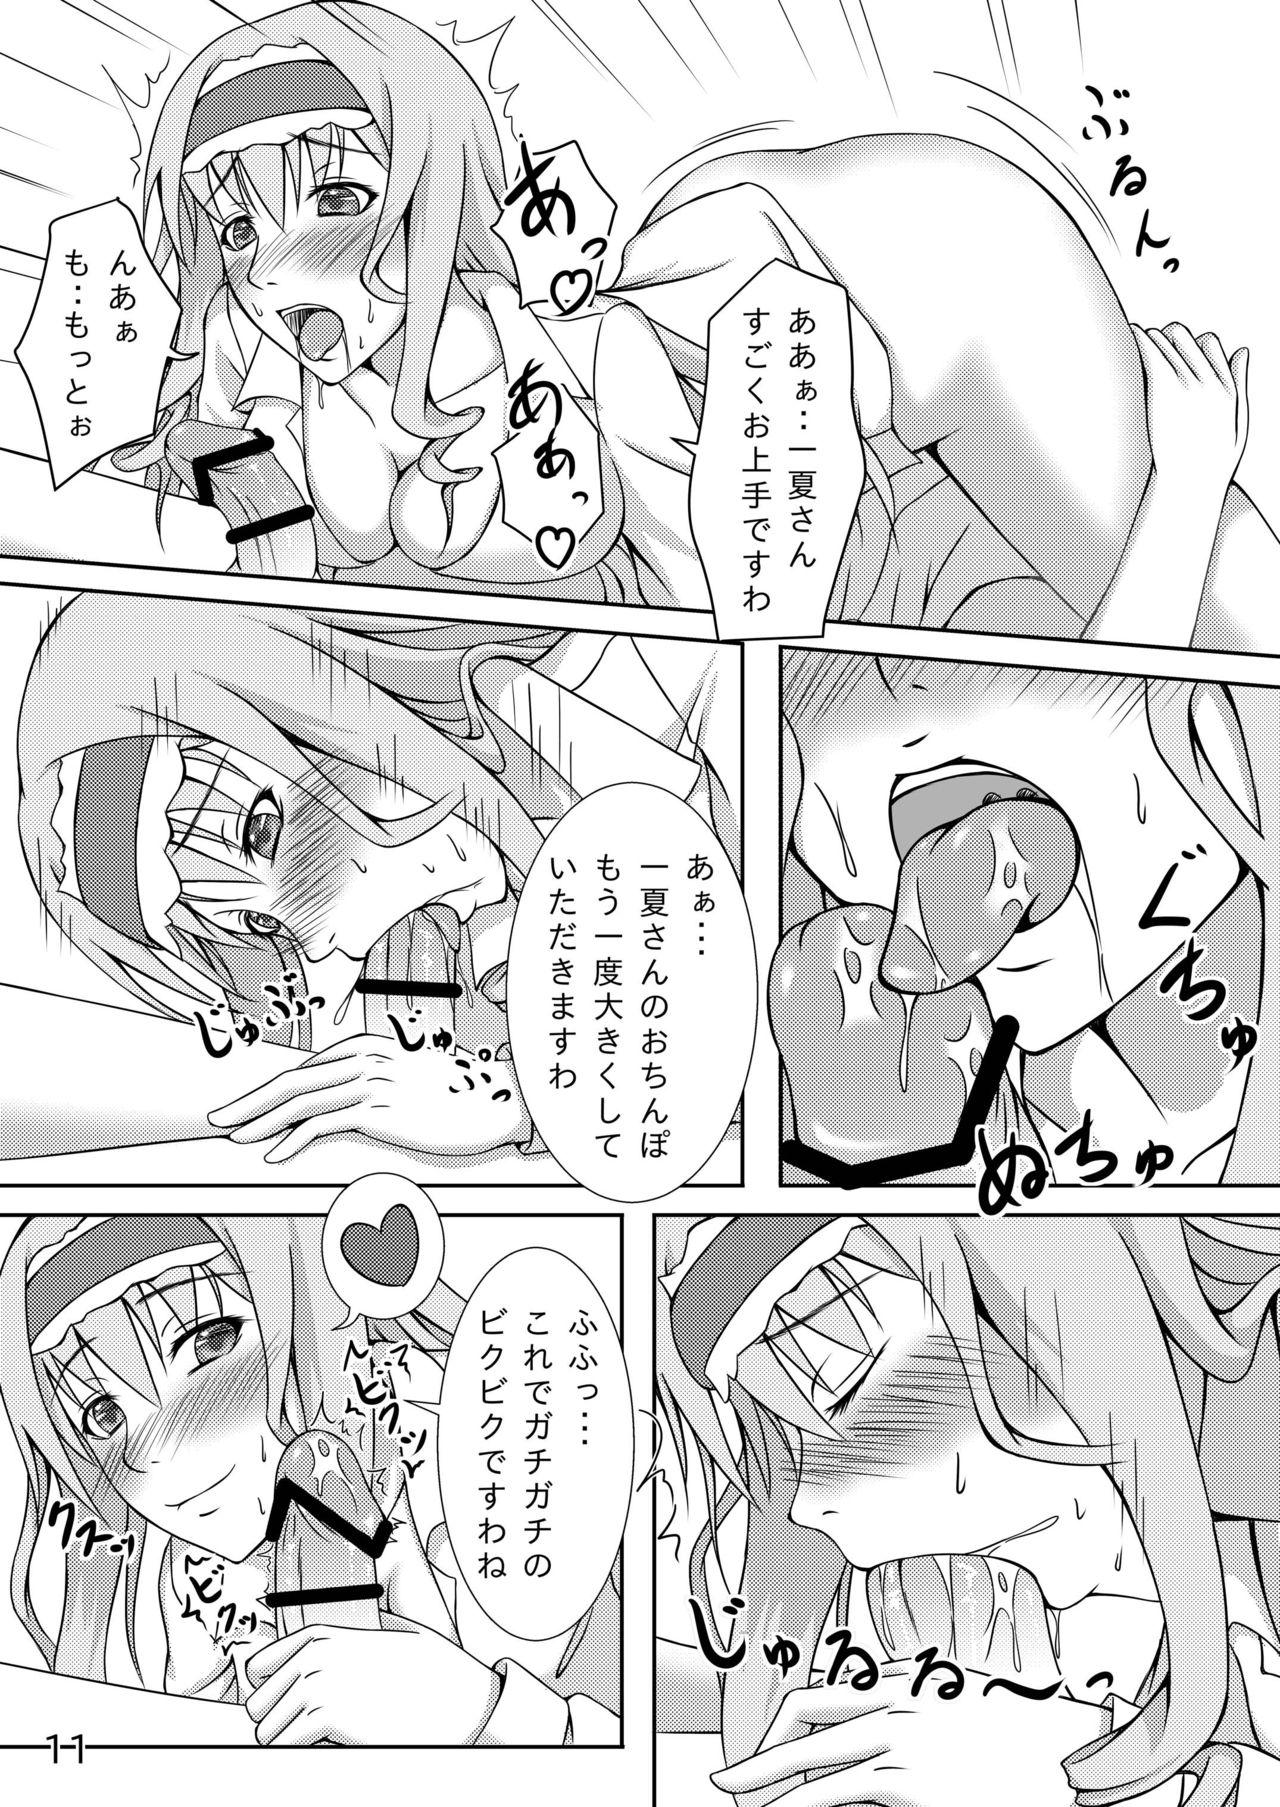 Hardcoresex Anata no Heart o Neraiuchi! - Infinite stratos Ffm - Page 11